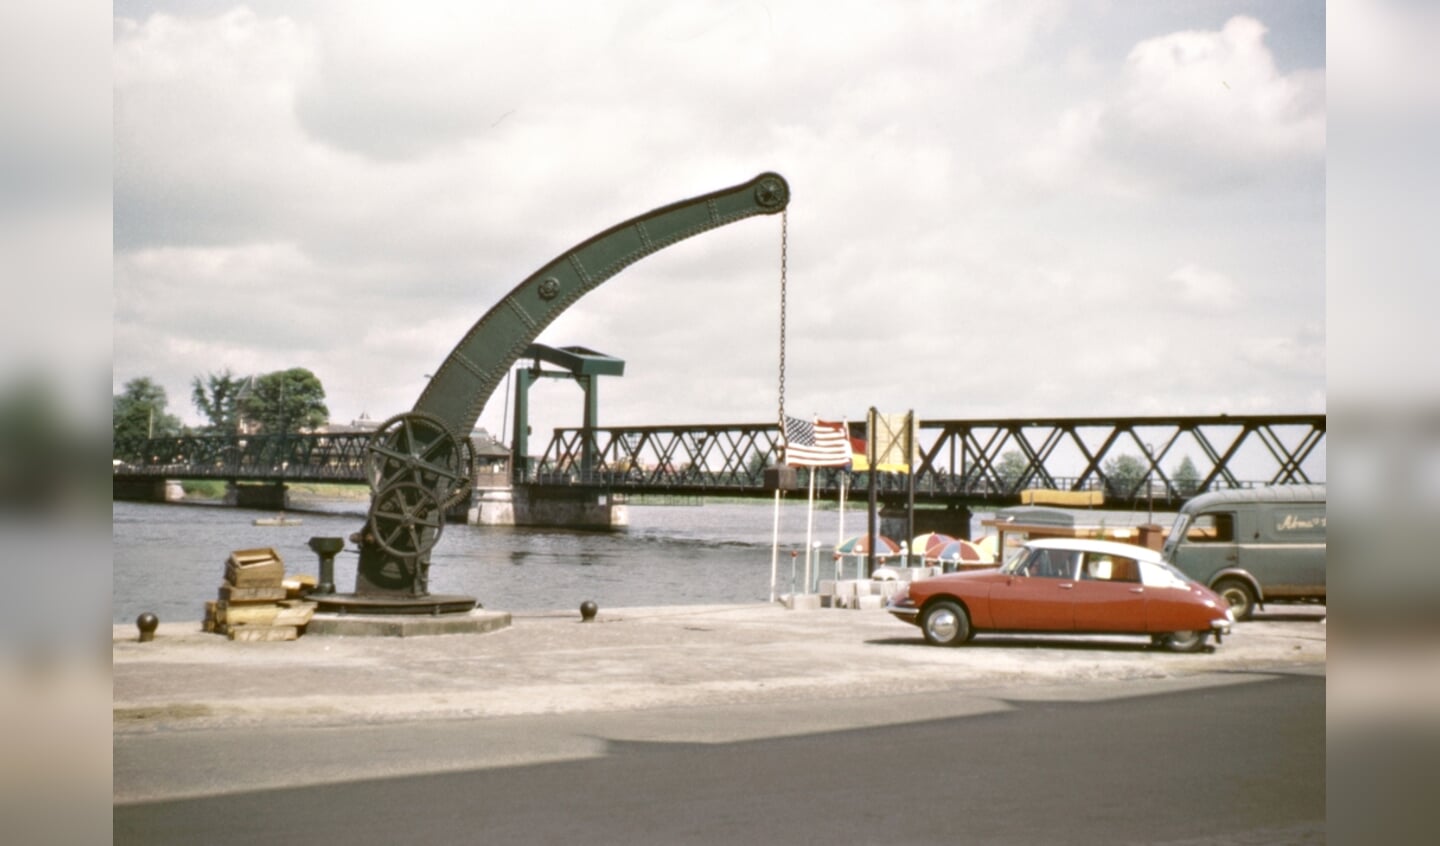 Zo zal de aloude kadekraan er straks weer aan de IJsselkade staan. Hier een nostalgisch plaatsje van rond 1960.dekraan vlak voor de afbraak midden jaren zestig